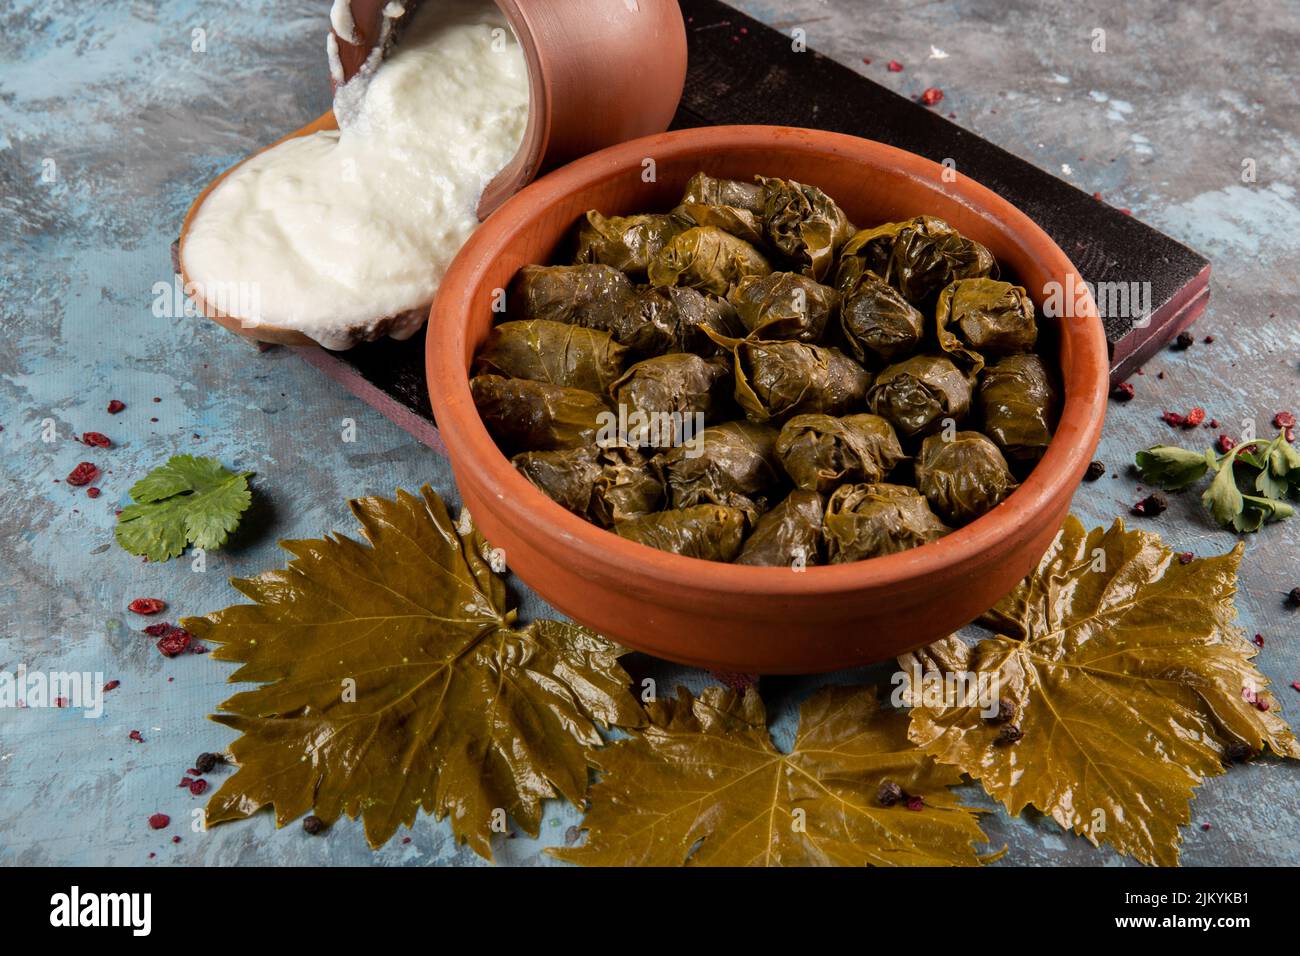 Eine Nahaufnahme des östlichen mediterranen Gerichts Dolma serviert mit griechischem Joghurt Stockfoto